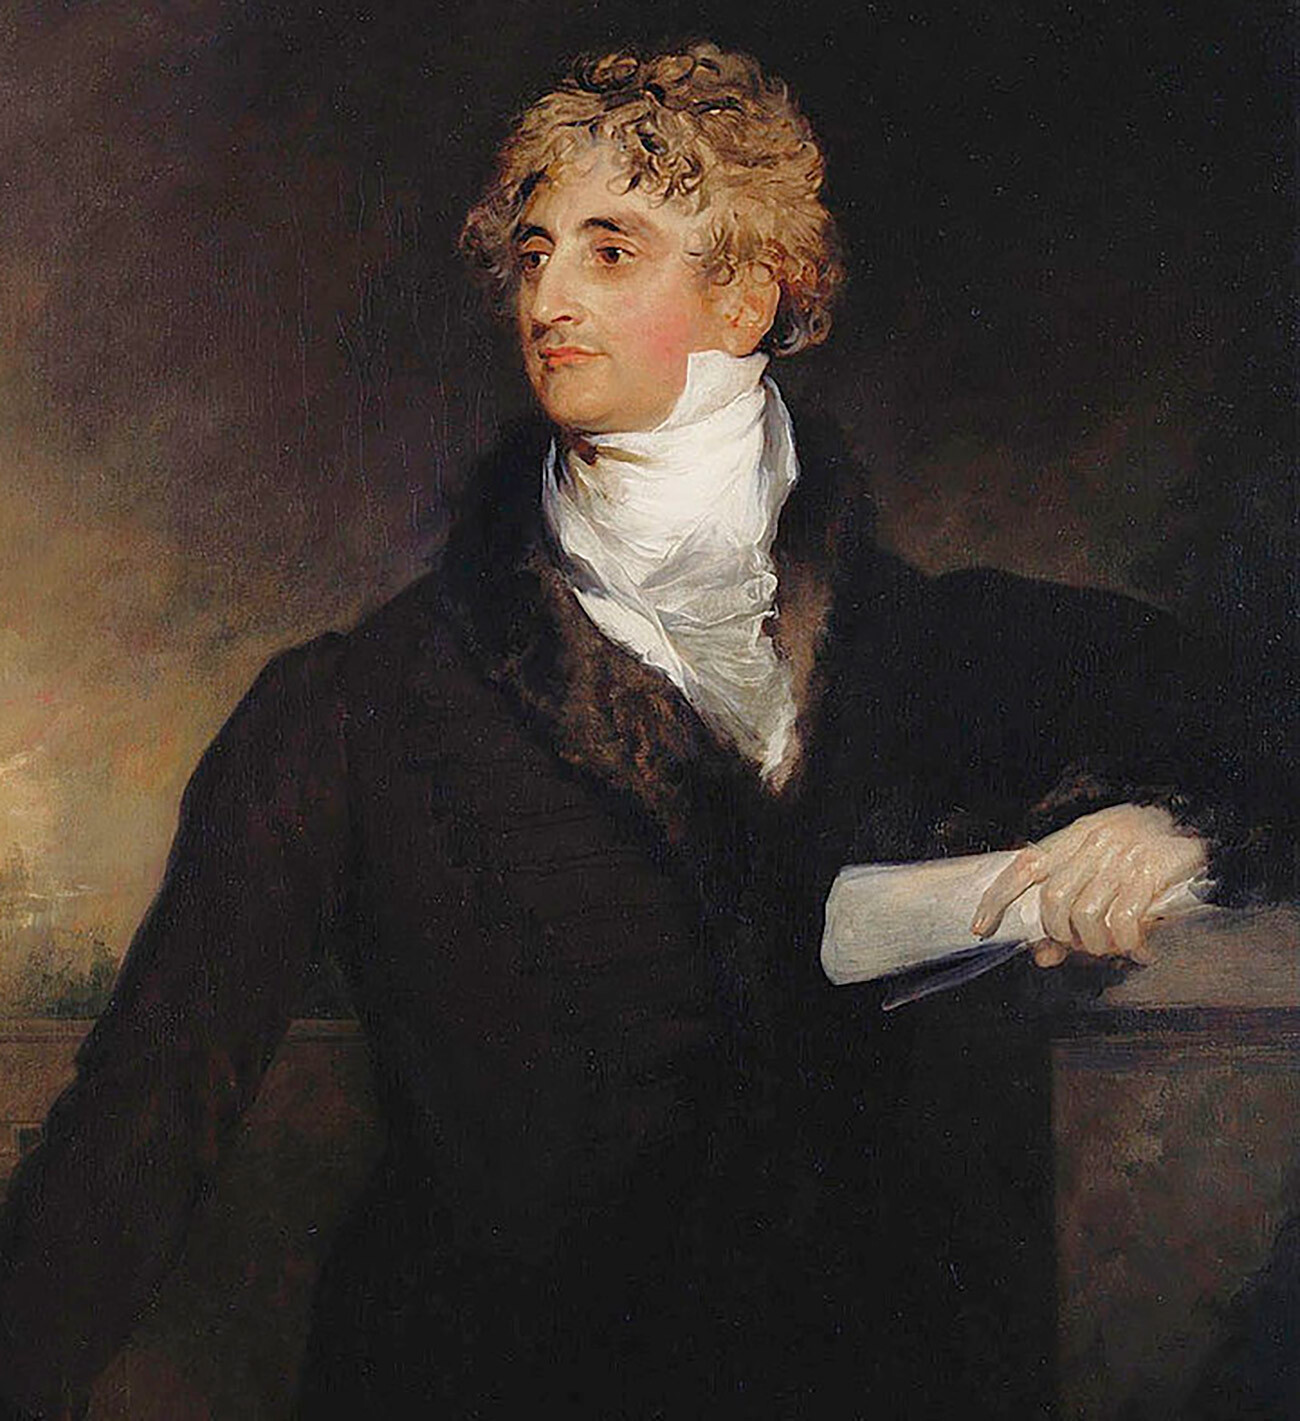 Armand-Emmanuel de Vignerot du Plessis, duc de Richelieu